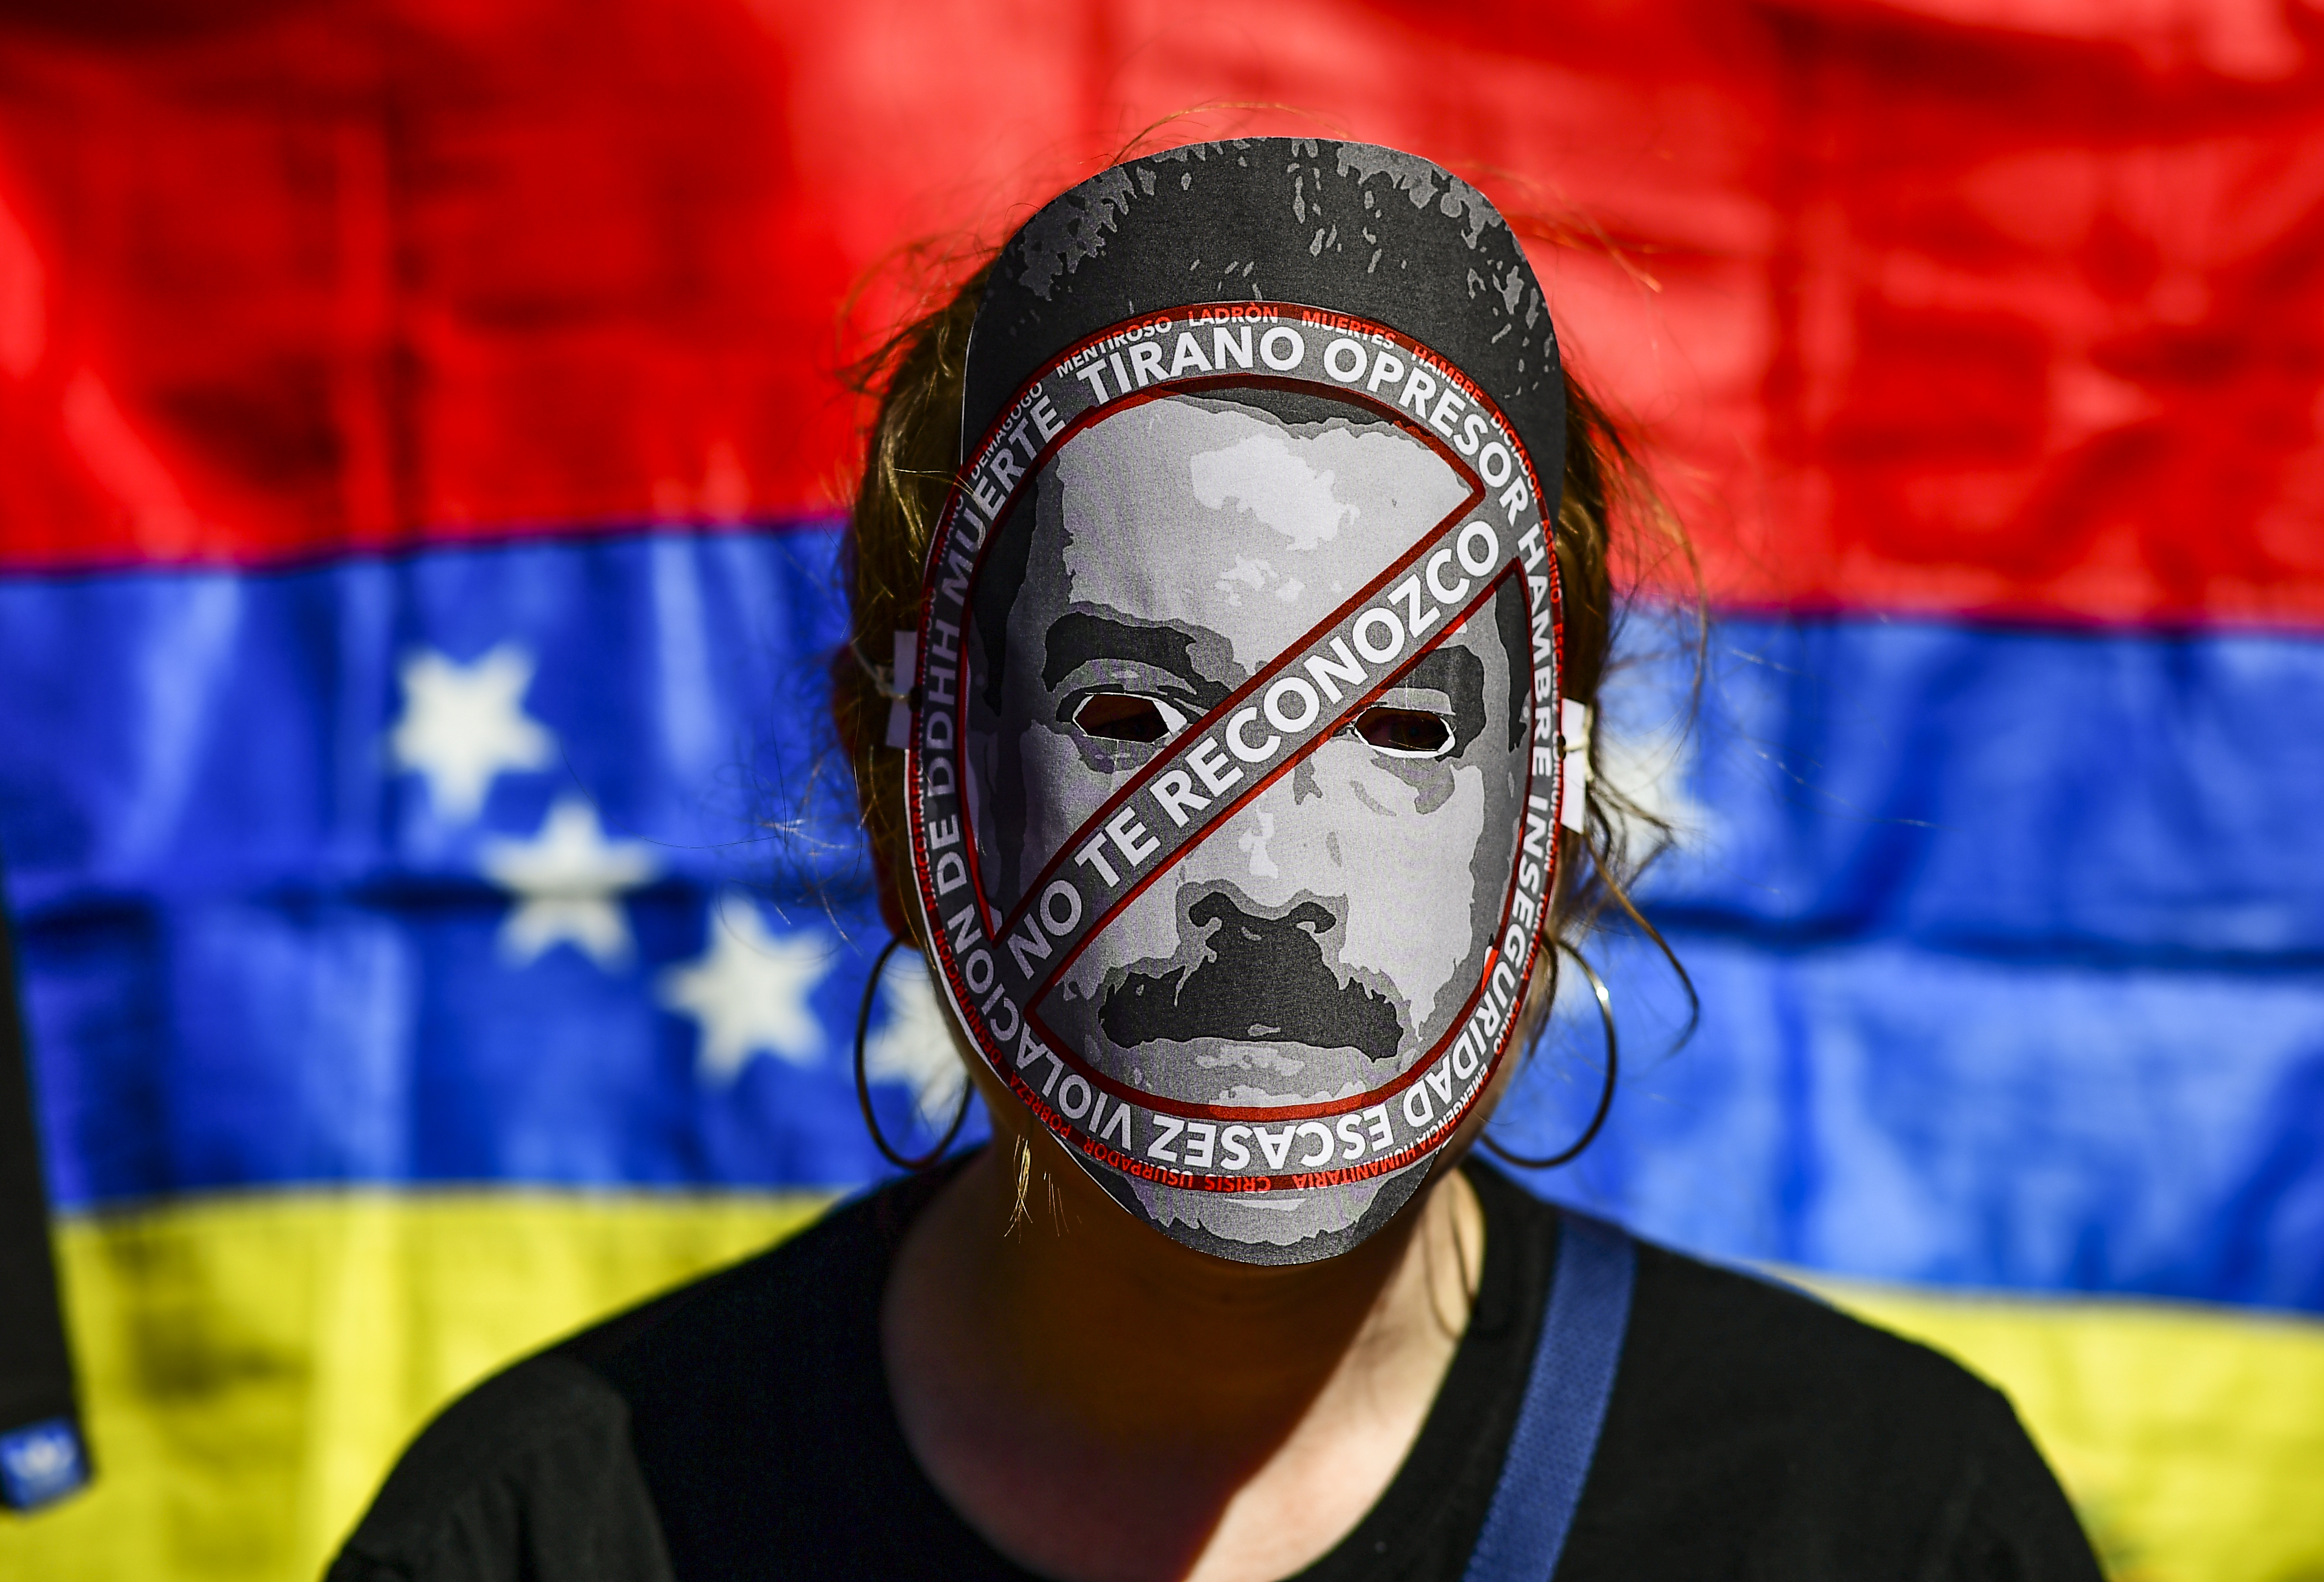 A duras penas Maduro recolectará 1 millón 600 mil firmas: 84.1 % de venezolanos apoya una intervención (Flash Meganálisis)